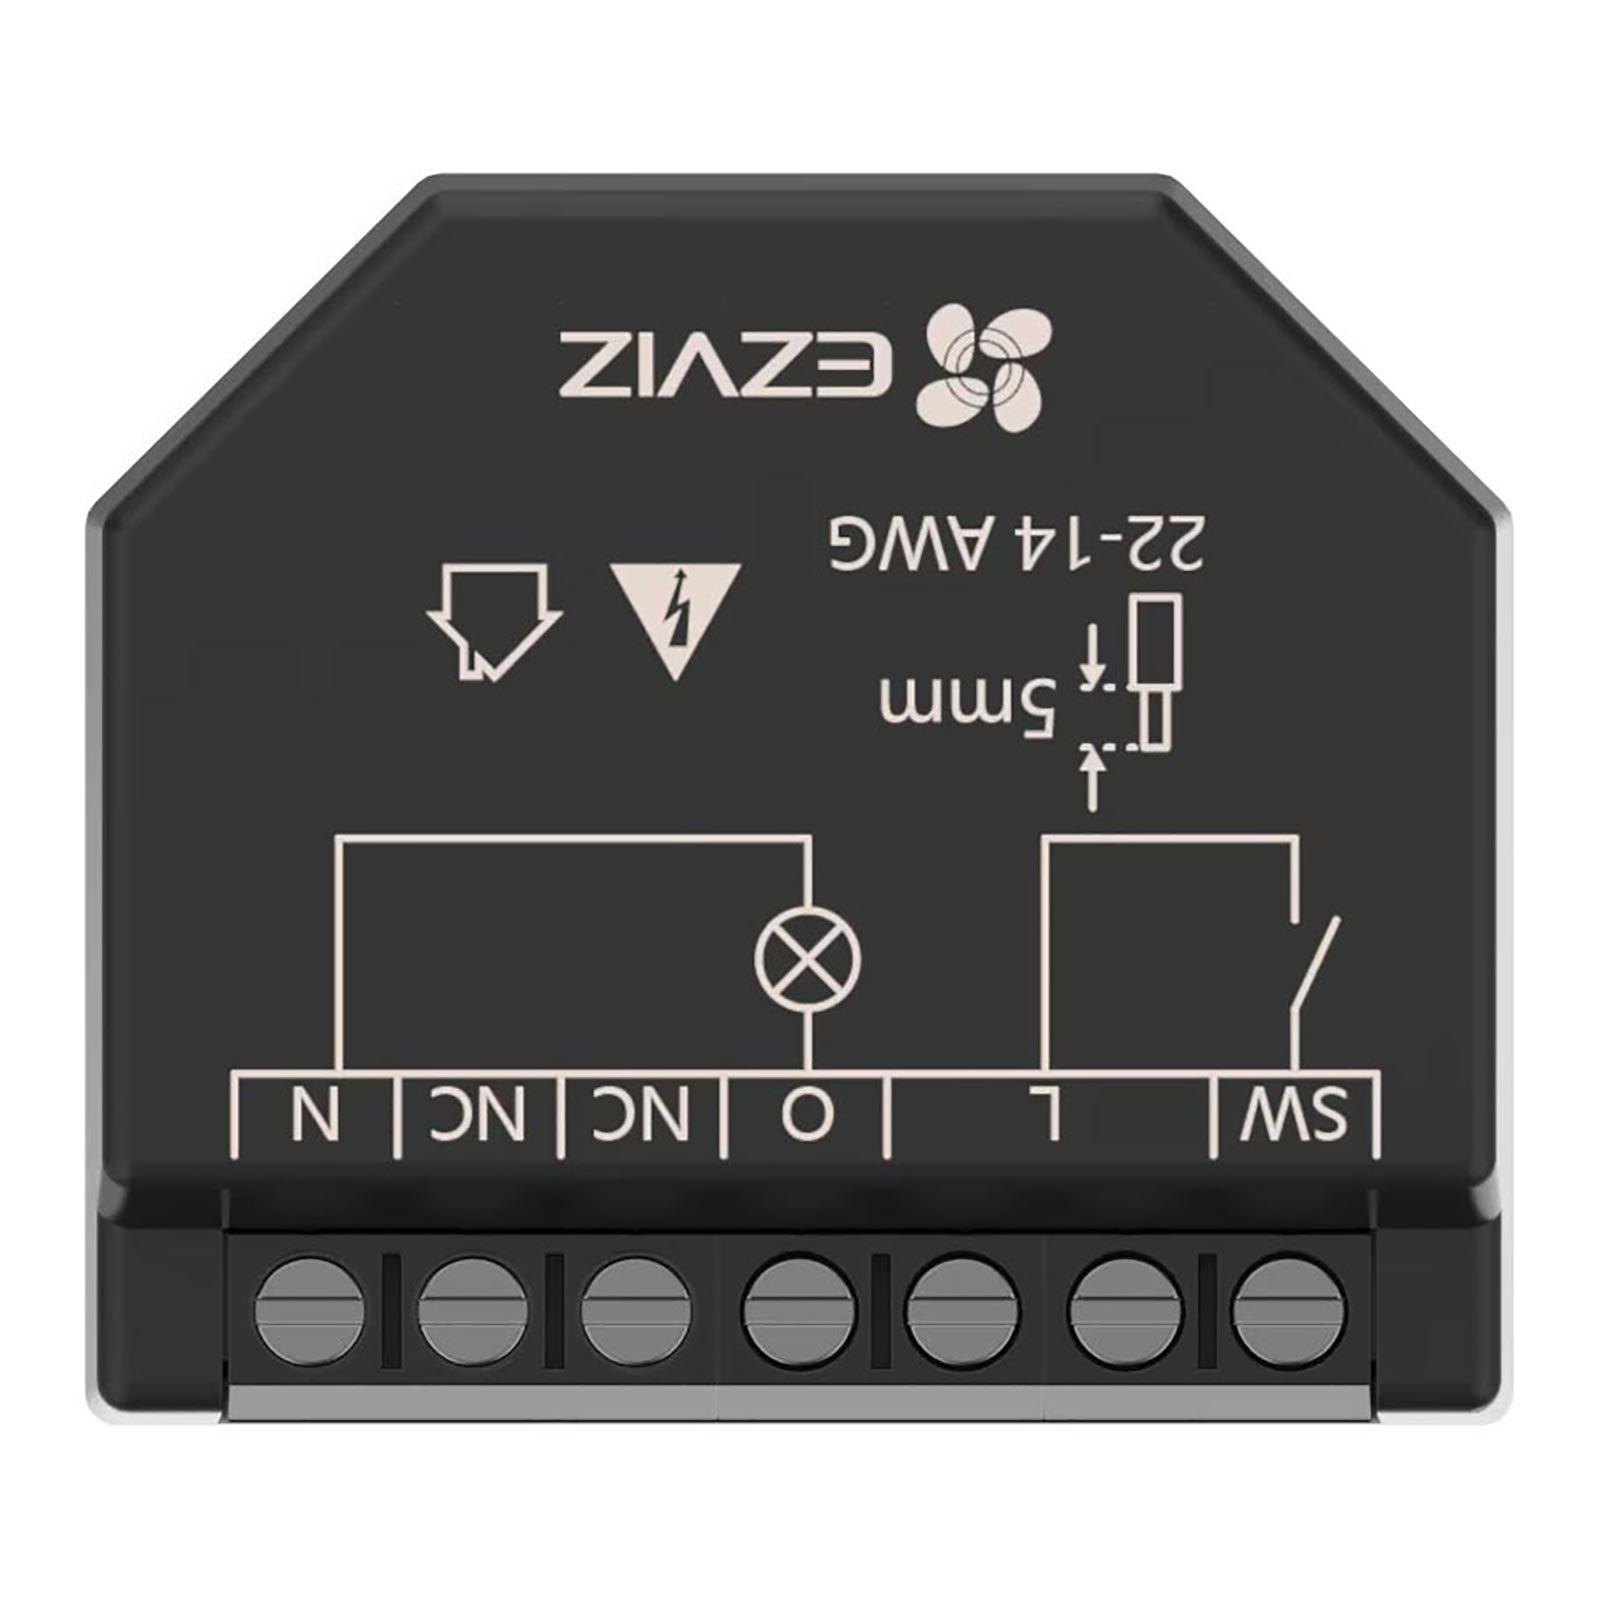 Mini rele EZVIZ impianti domotica interruttore 1 CH canale SMART WiFi controllo luci monitoraggio consumi compatibile APP Alexa e Google